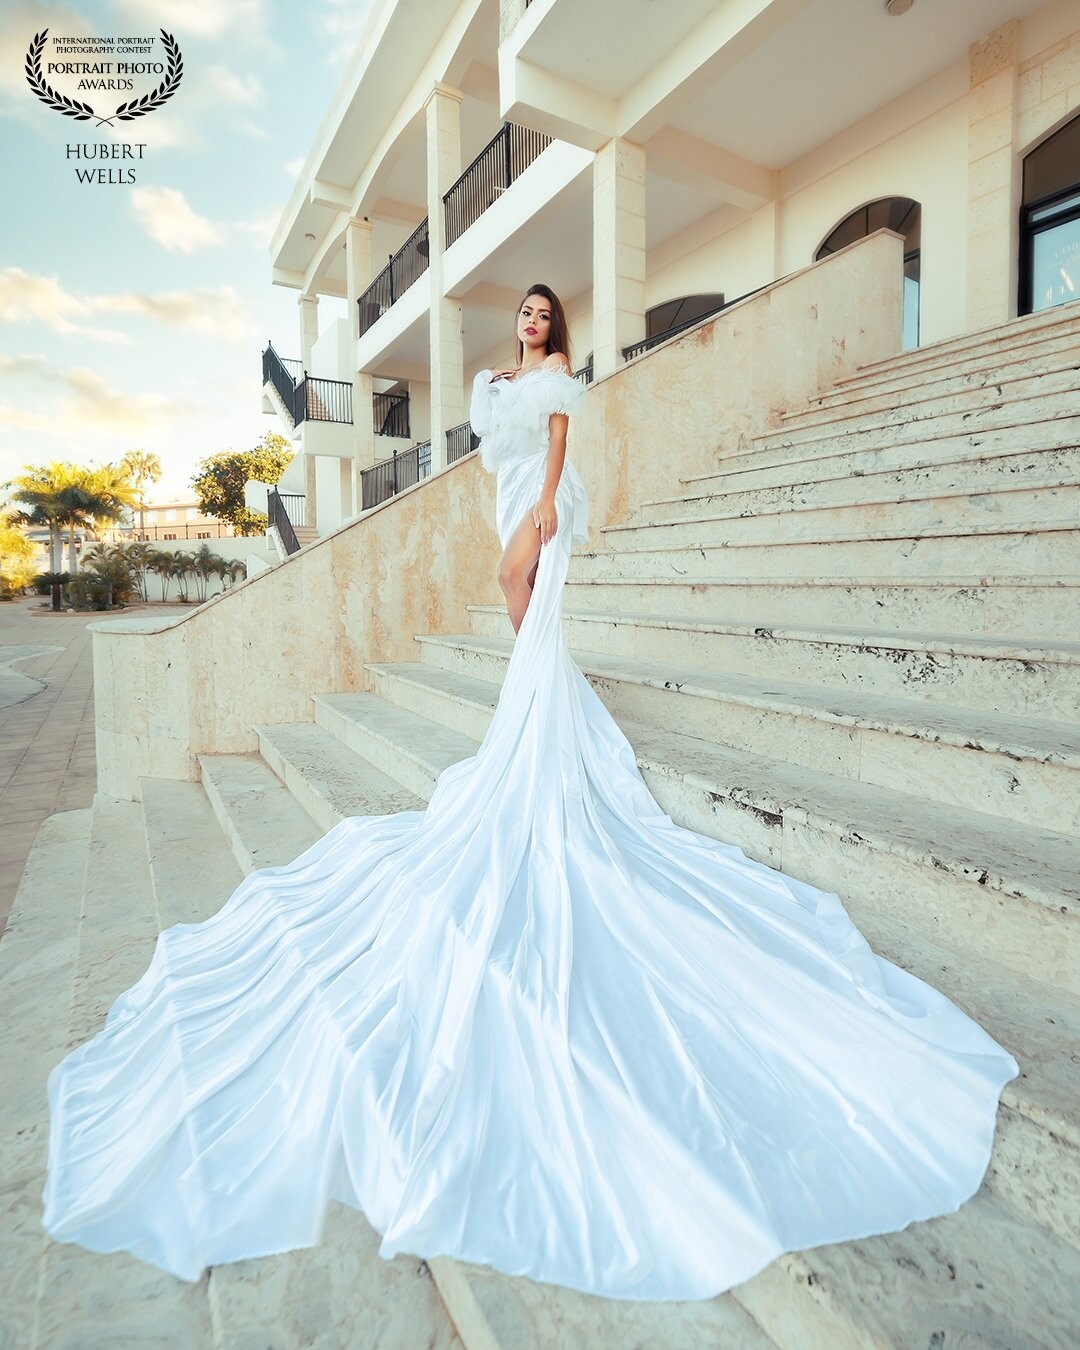 Nuestra modelo viajó a República Dominicana desde Brazil, aprovechamos nuestro nuevo vestido blanco para sacar unas fotos espectaculares en la marina de ocean world puerto plata.